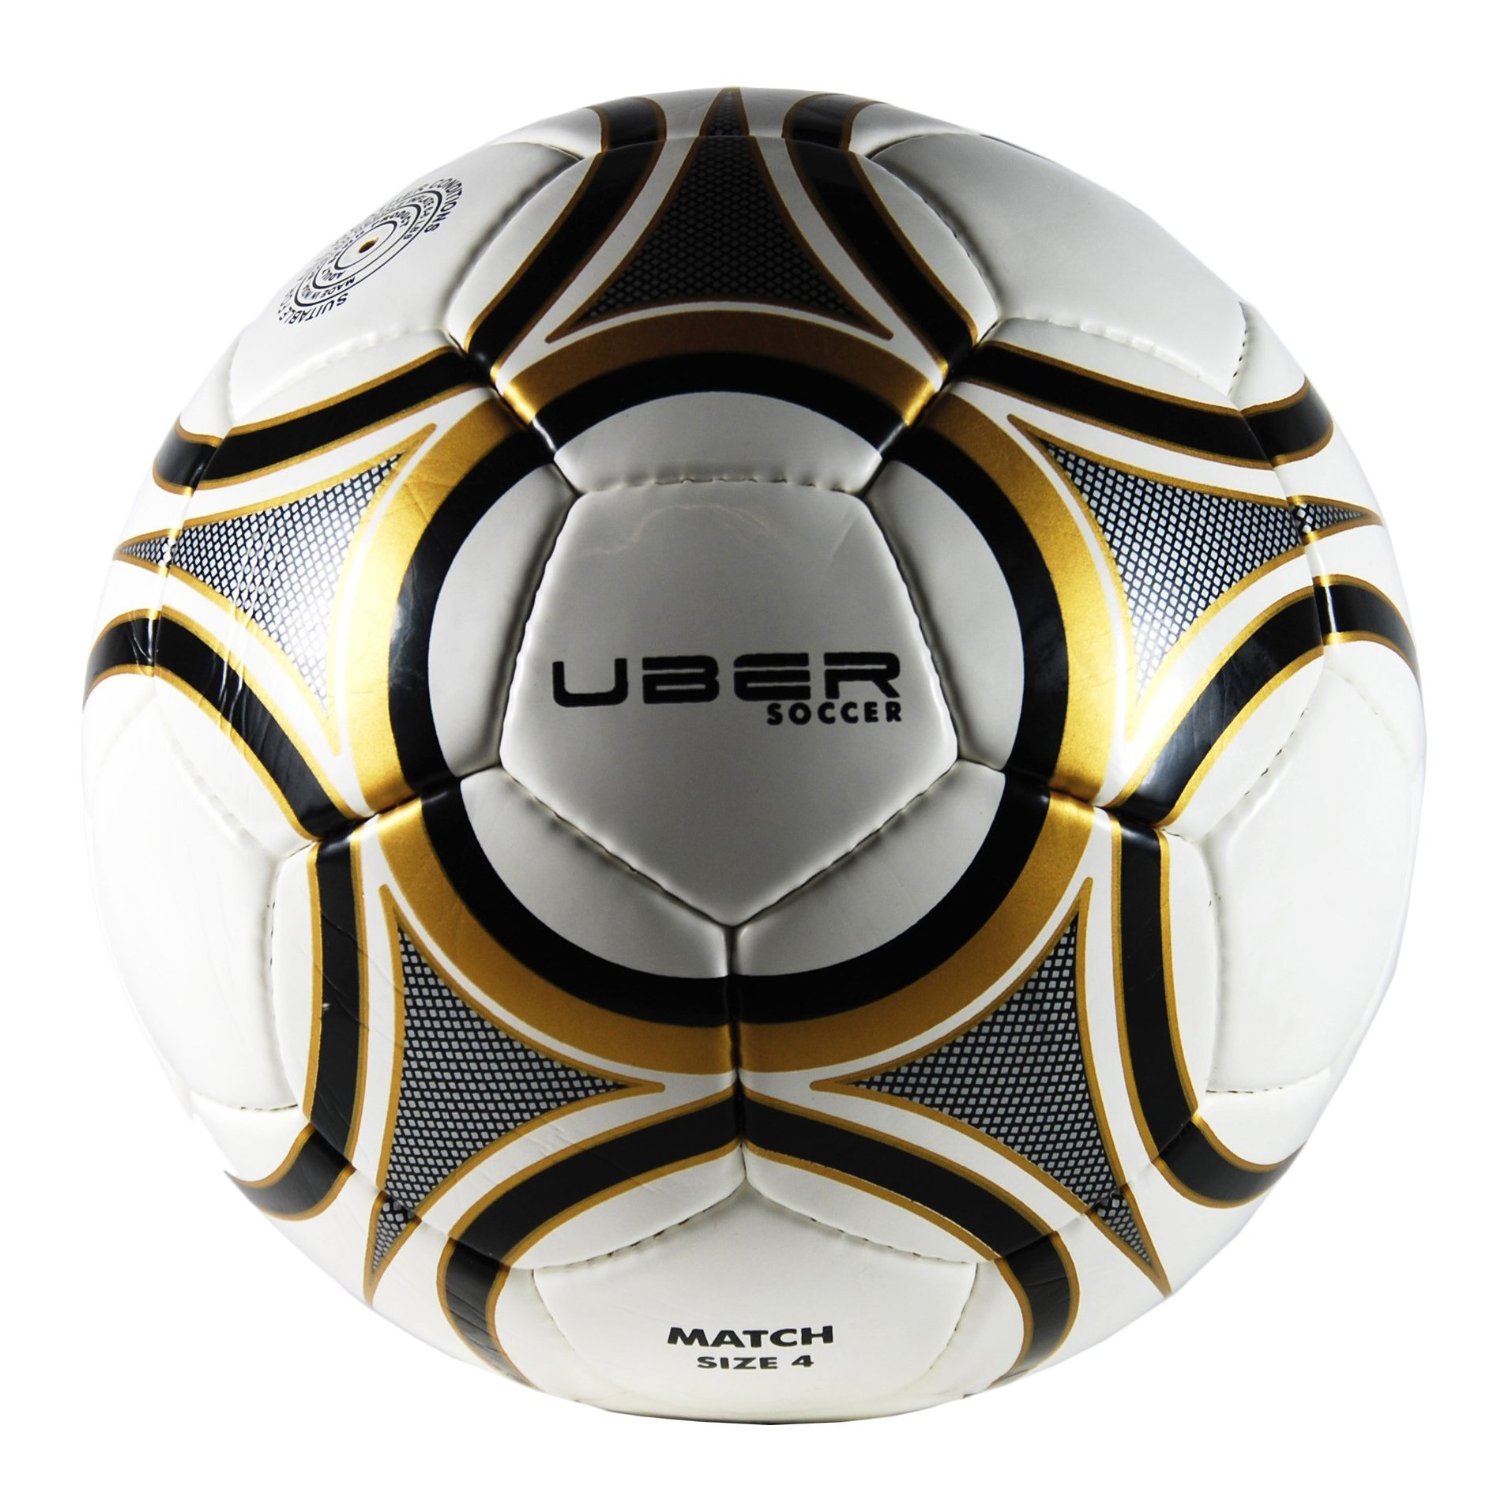 Uber Soccer Match Soccer Ball (White, Black And Gold)